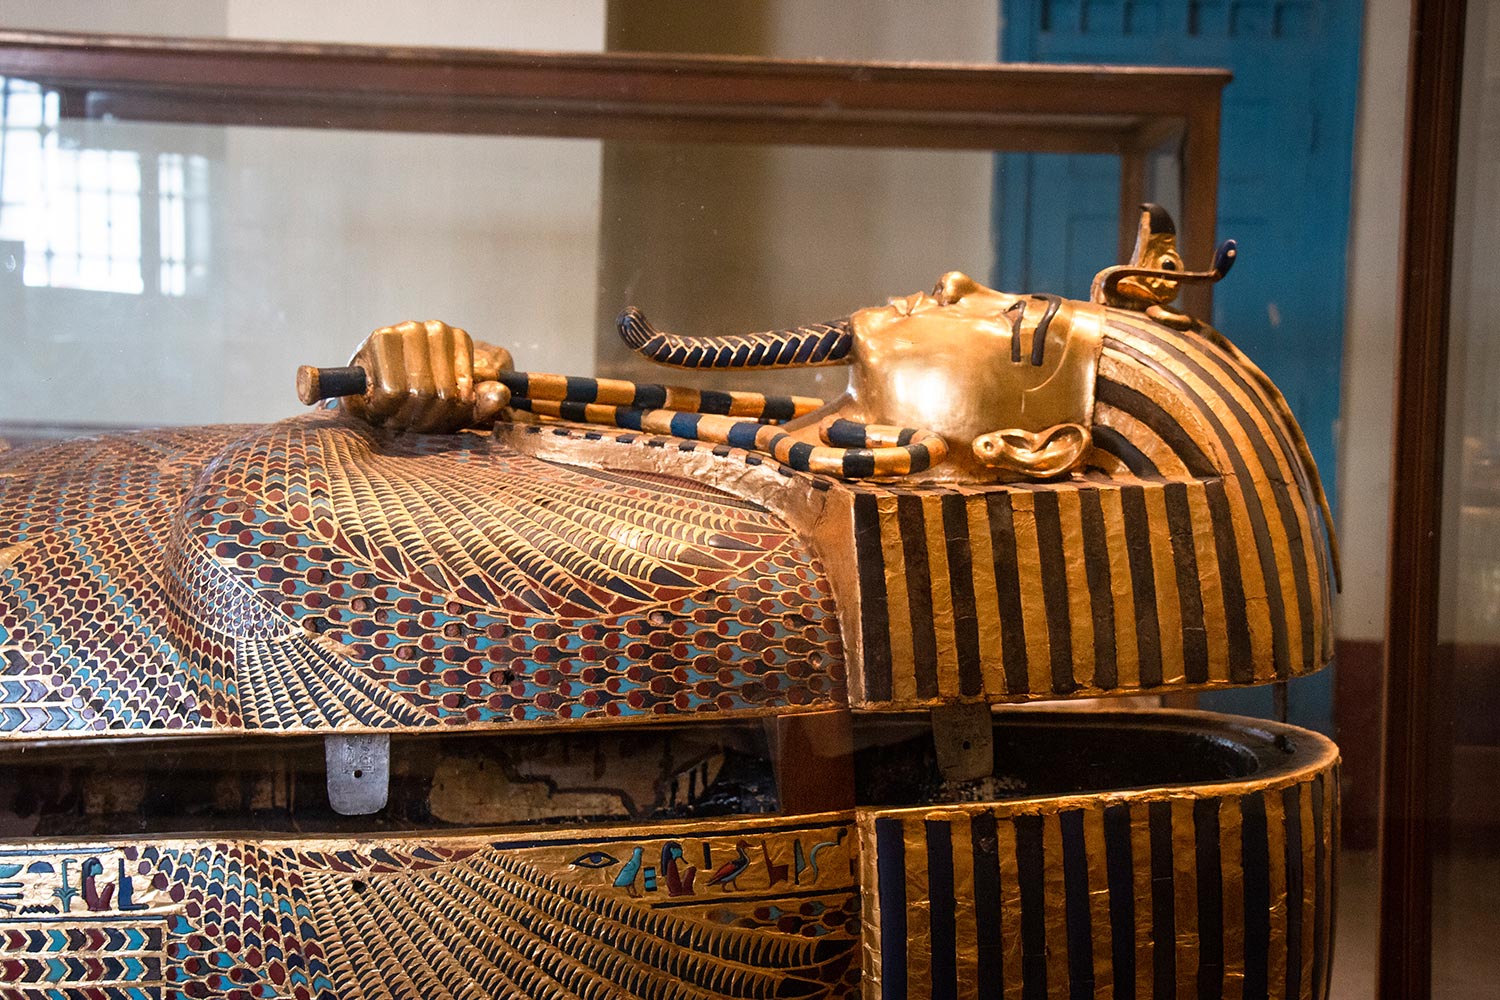 Sarcophage de Toutânkhamon, Musée égyptien, Le Caire, Égypte / Tutankhamun Sarcophage, Egyptian Museum, Cairo, Egypt